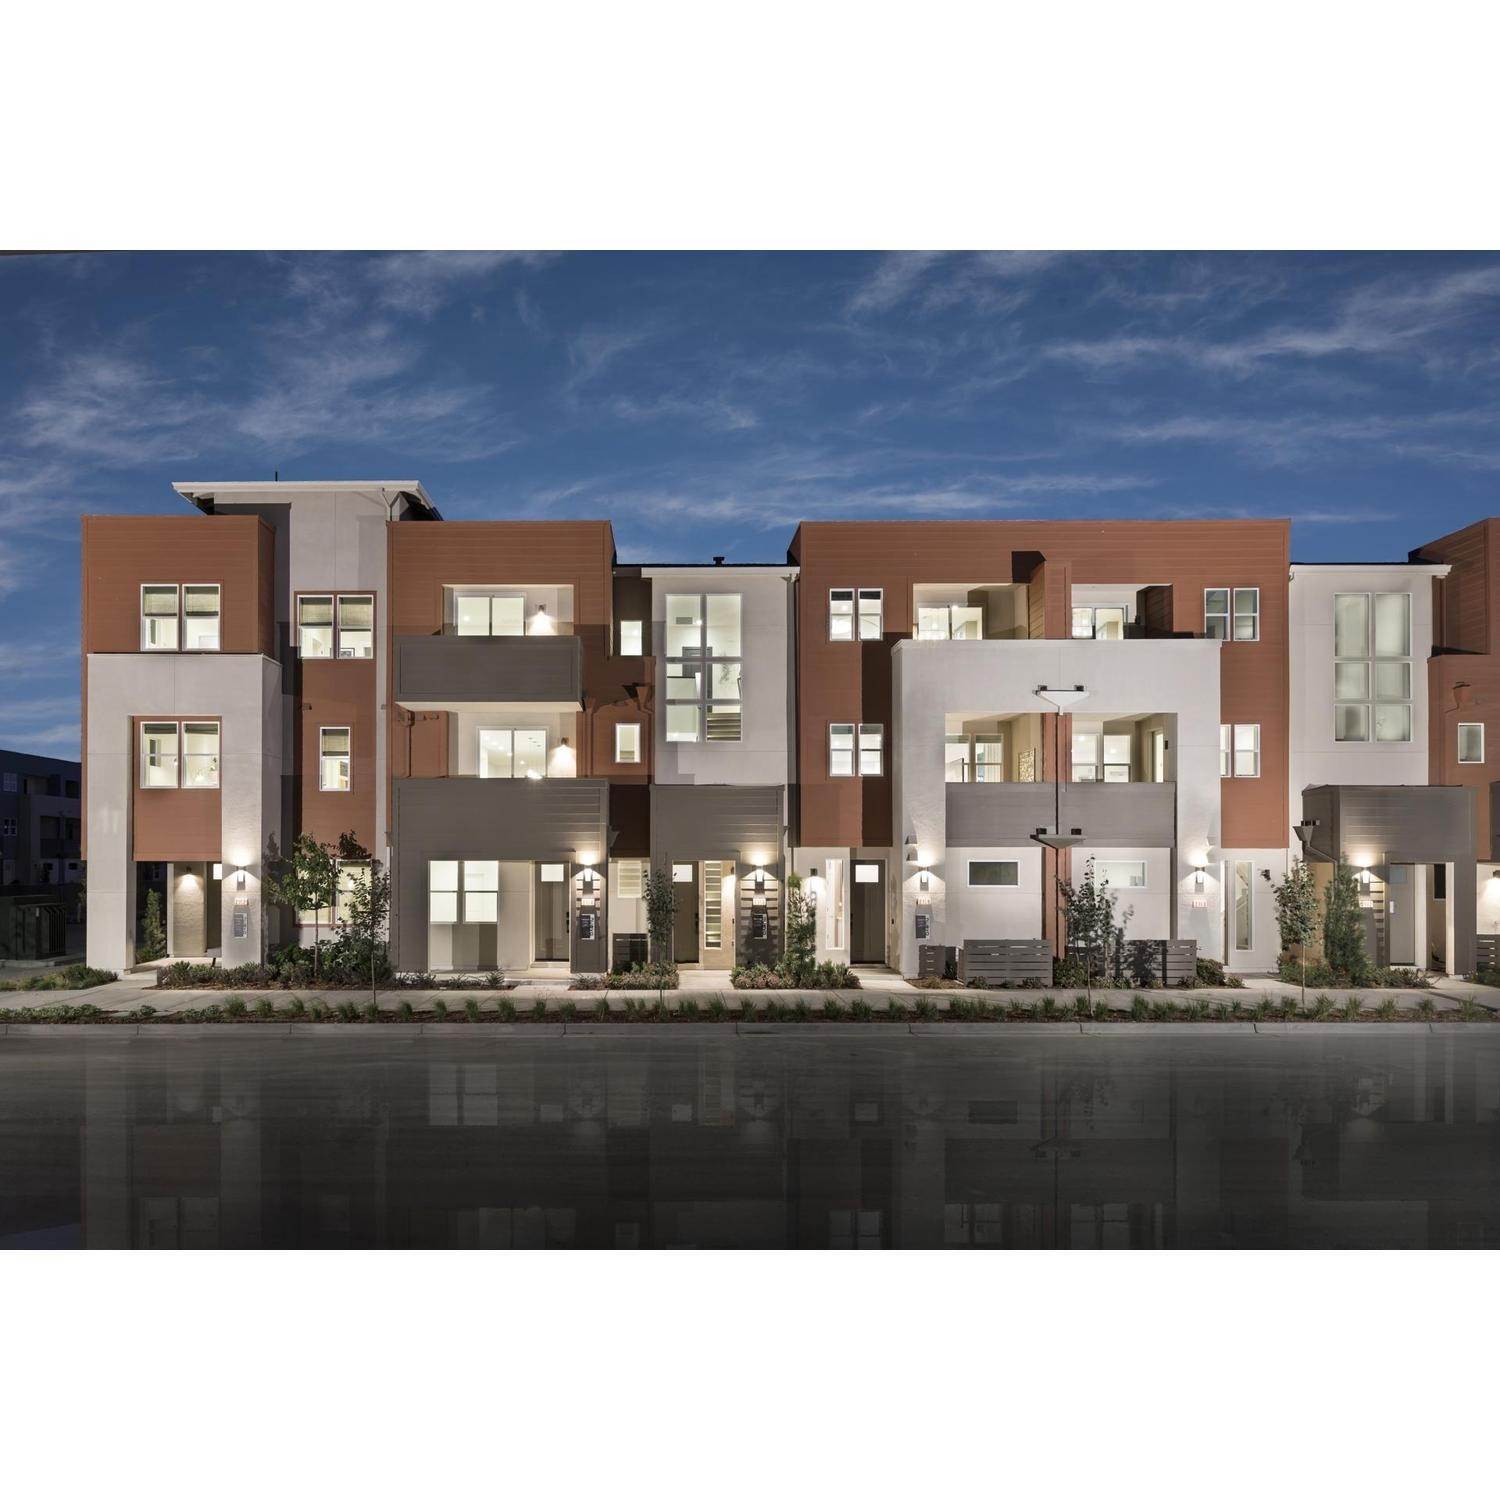 Unifamiliar por un Venta en Nuevo - Terraces Plan 3 3505 Kifer Rd SANTA CLARA, CALIFORNIA 95051 UNITED STATES